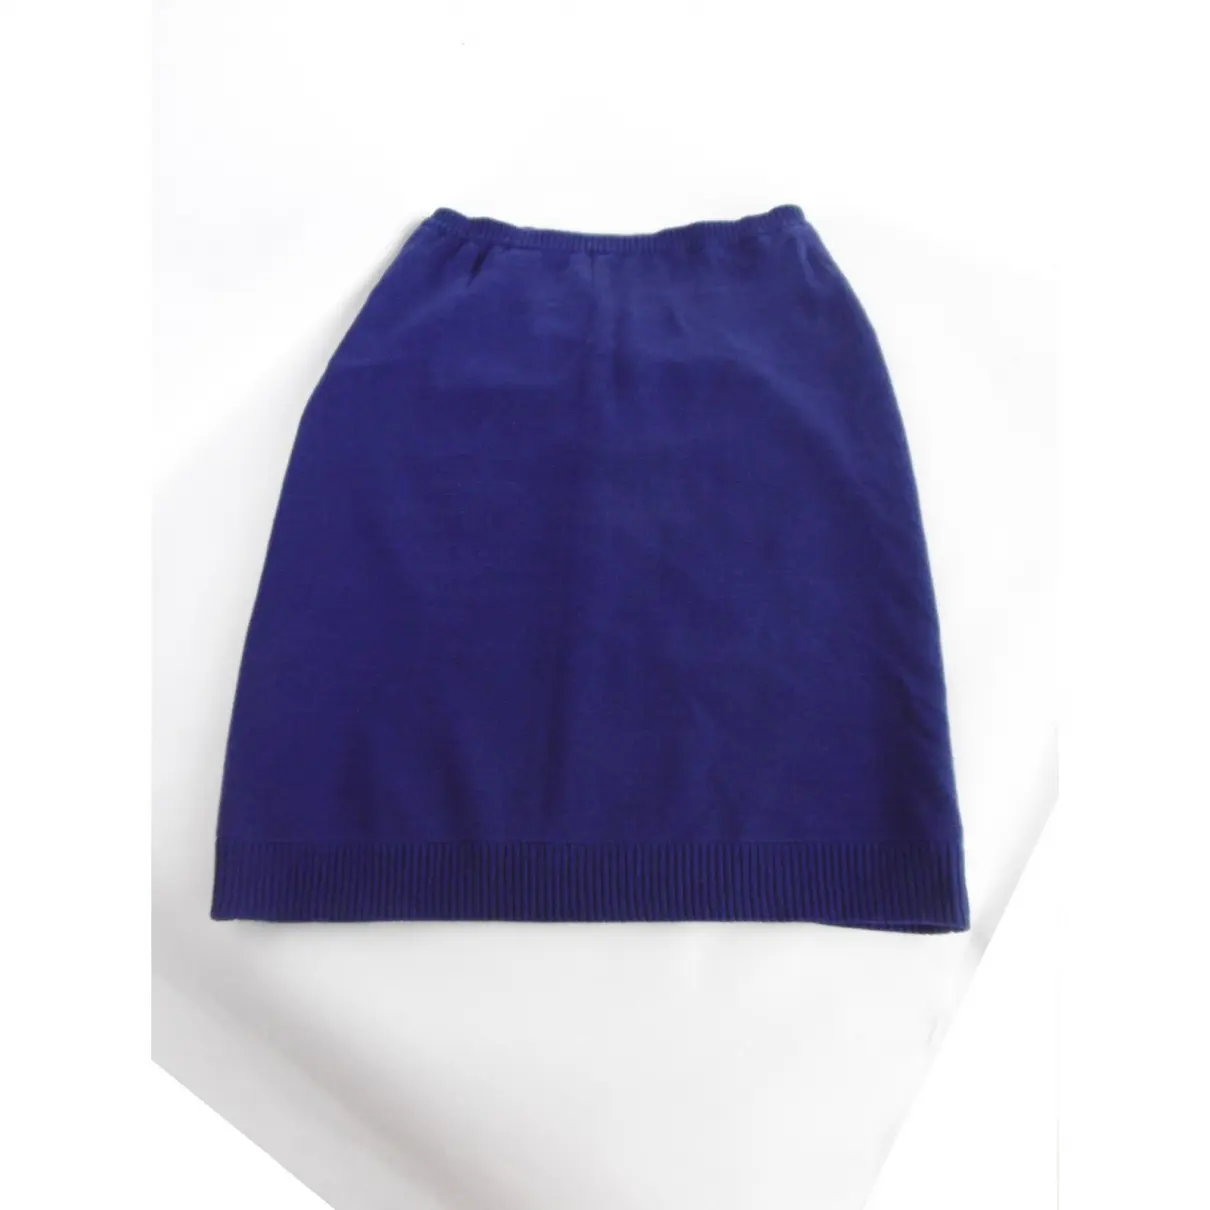 Buy Celine Skirt online